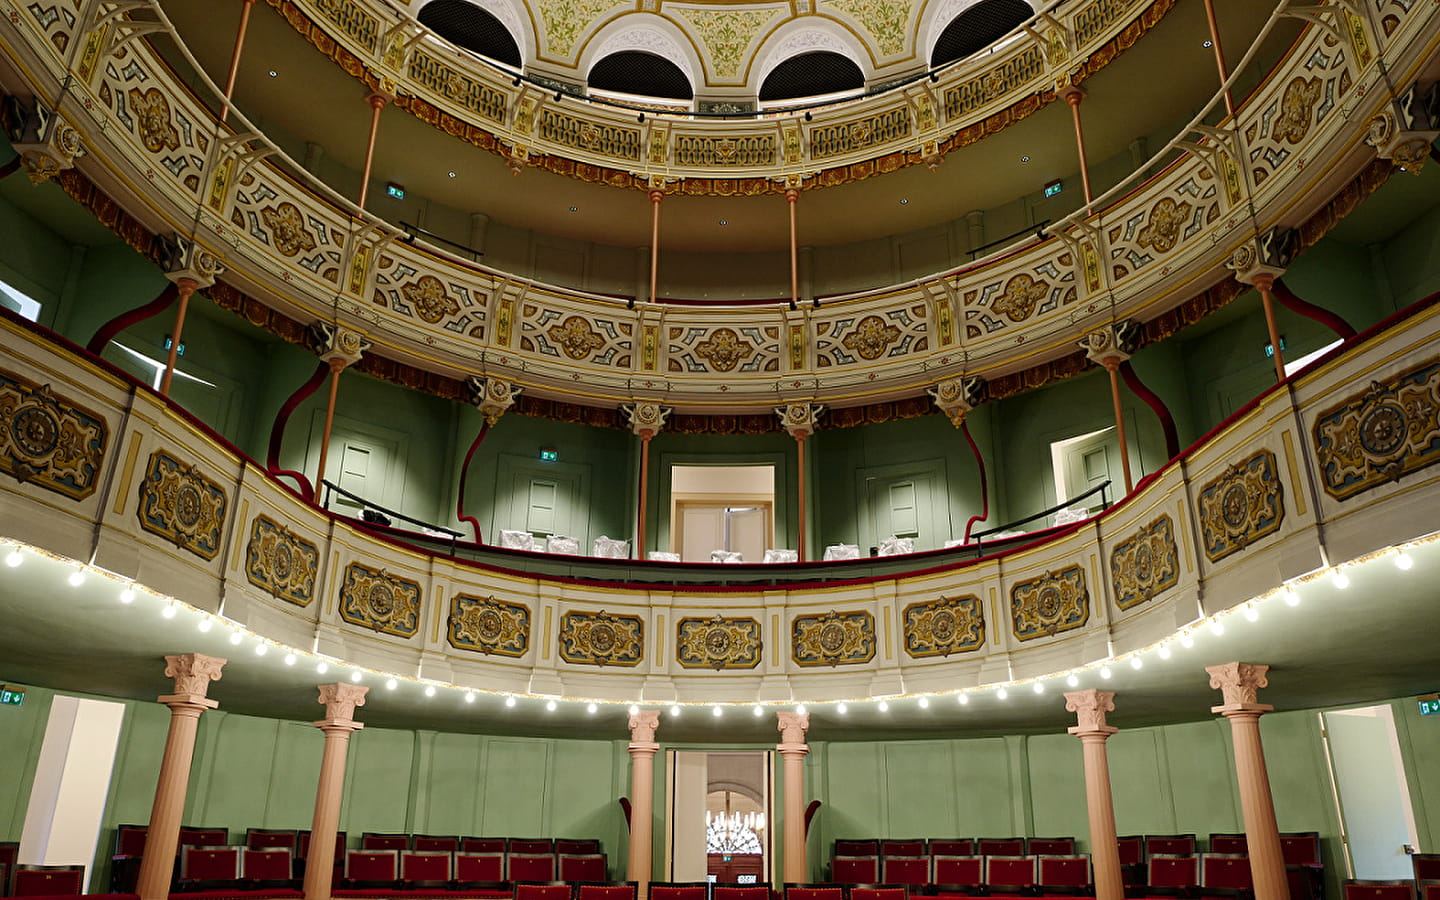 The architecture of the Dole theatre